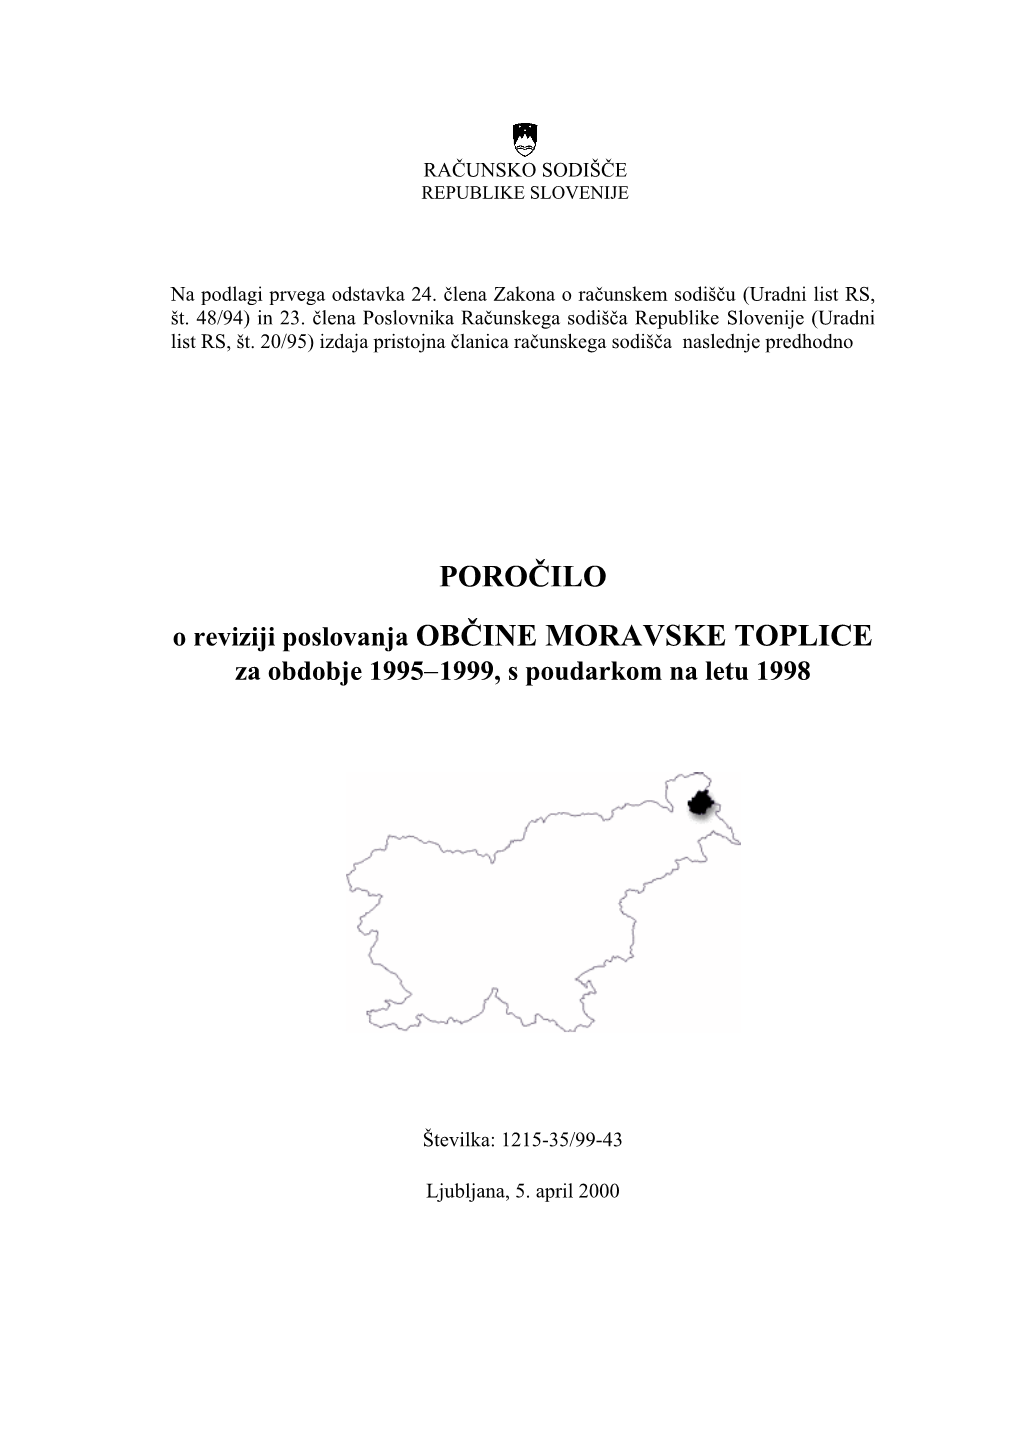 POROČILO O Reviziji Poslovanja OBČINE MORAVSKE TOPLICE Za Obdobje 1995−1999, S Poudarkom Na Letu 1998